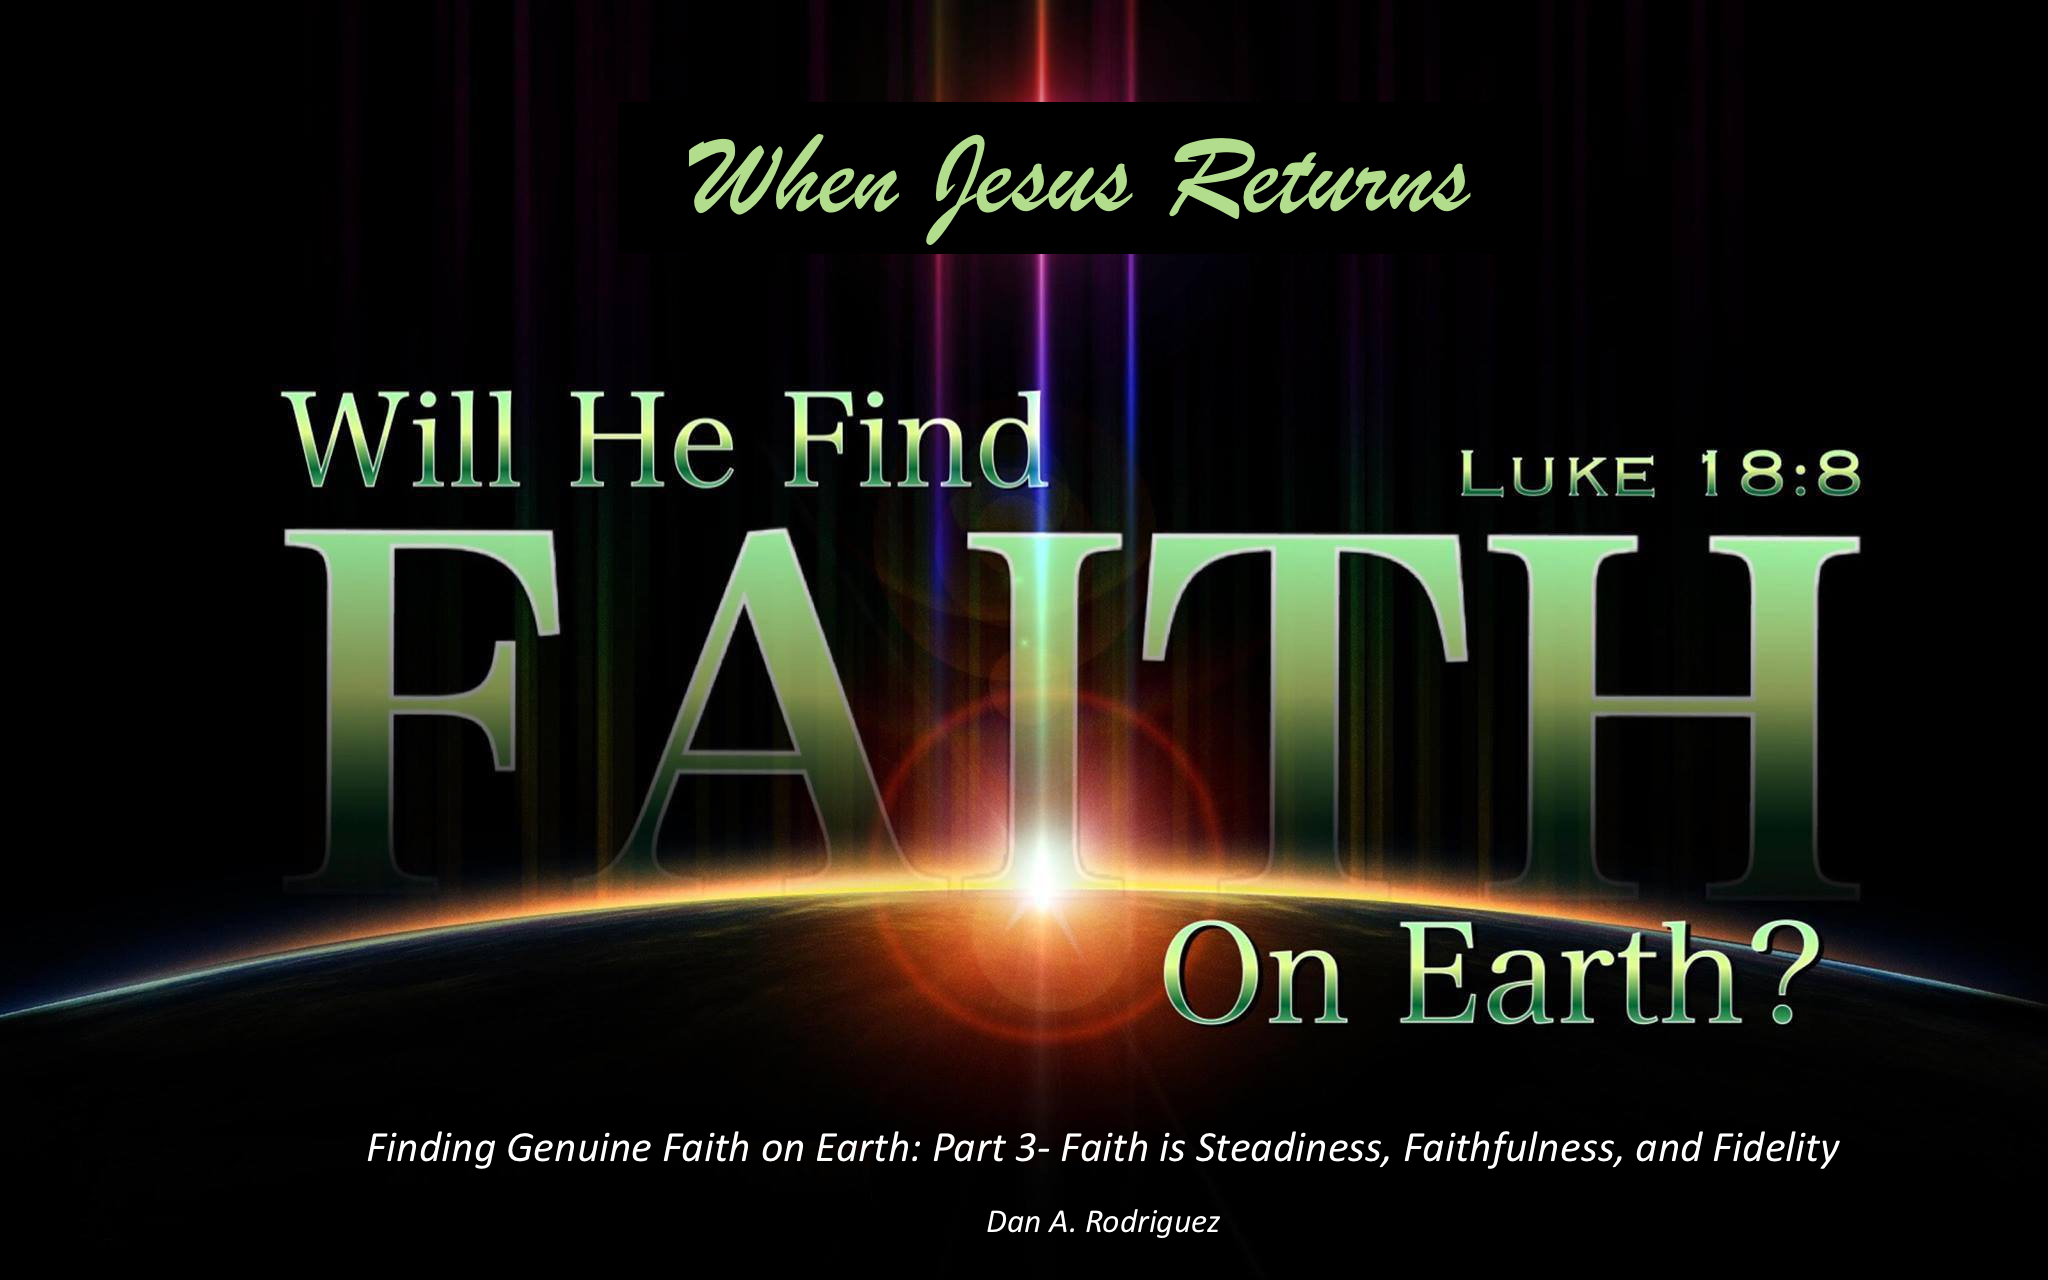 faith_on_earth_3b.jpg